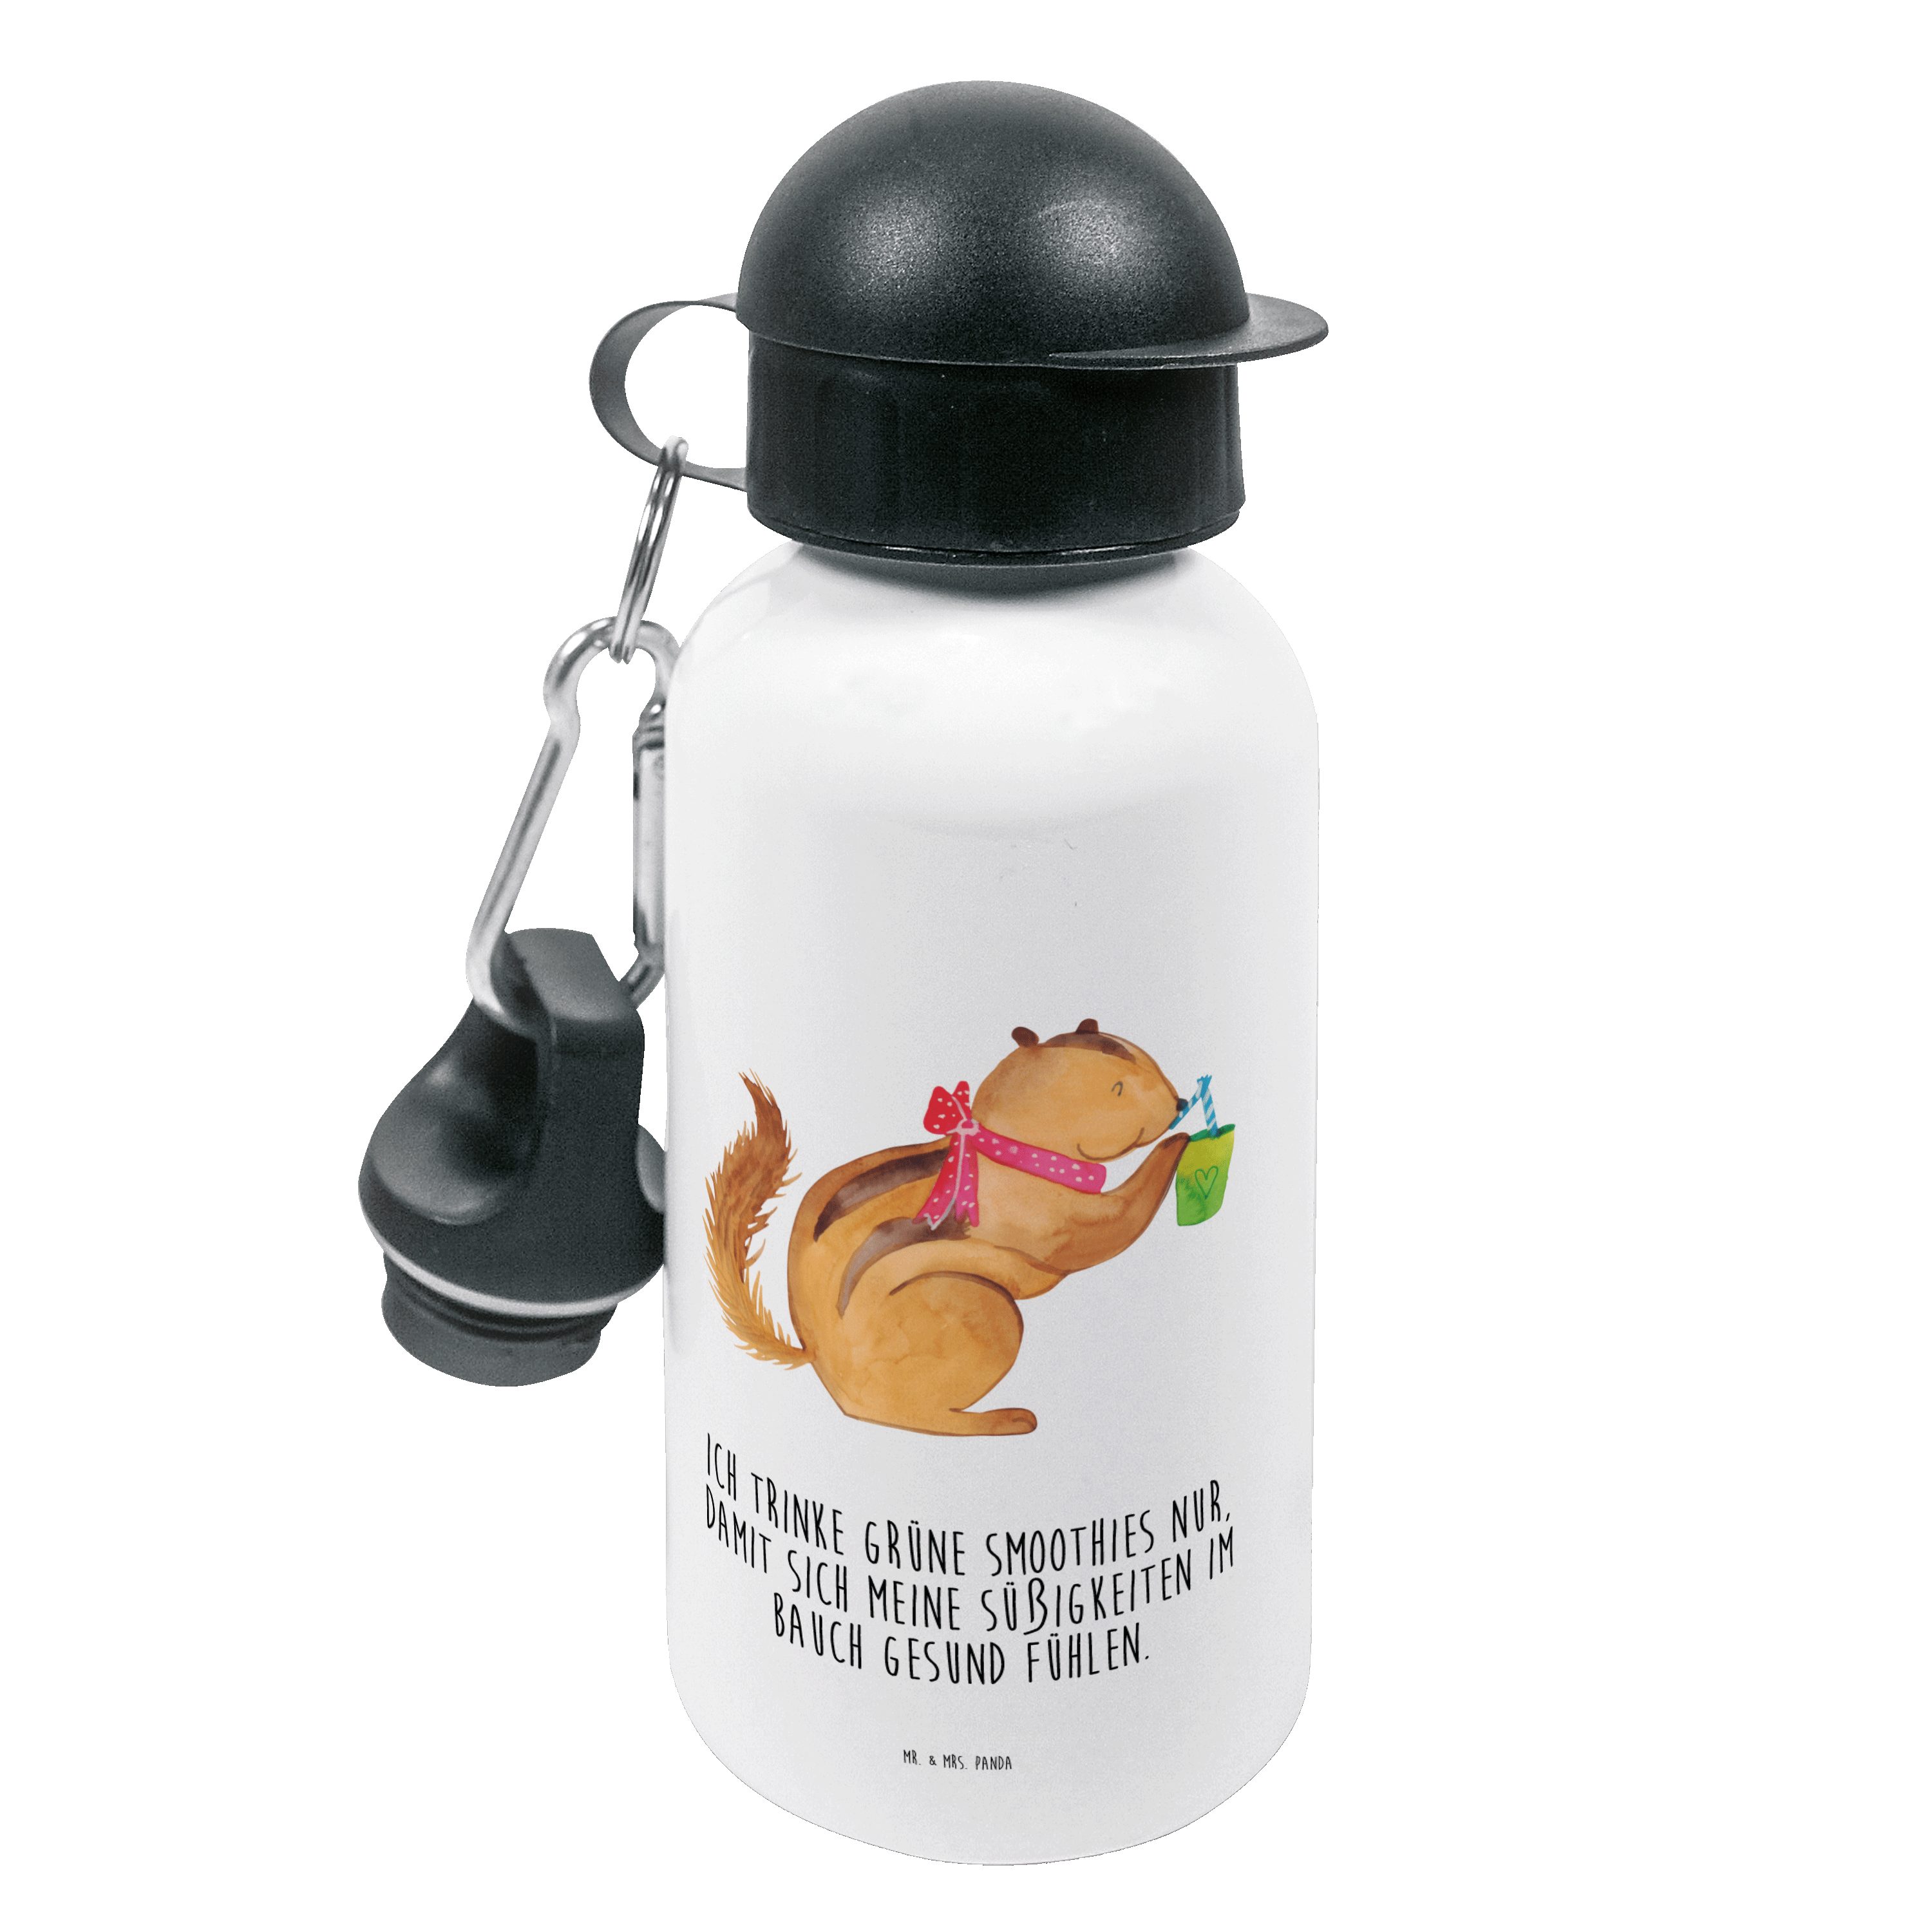 Mr. & Mrs. Panda Trinkflasche Eichhörnchen Smoothie - Weiß - Geschenk, lustige Sprüche, Kids, Kinde